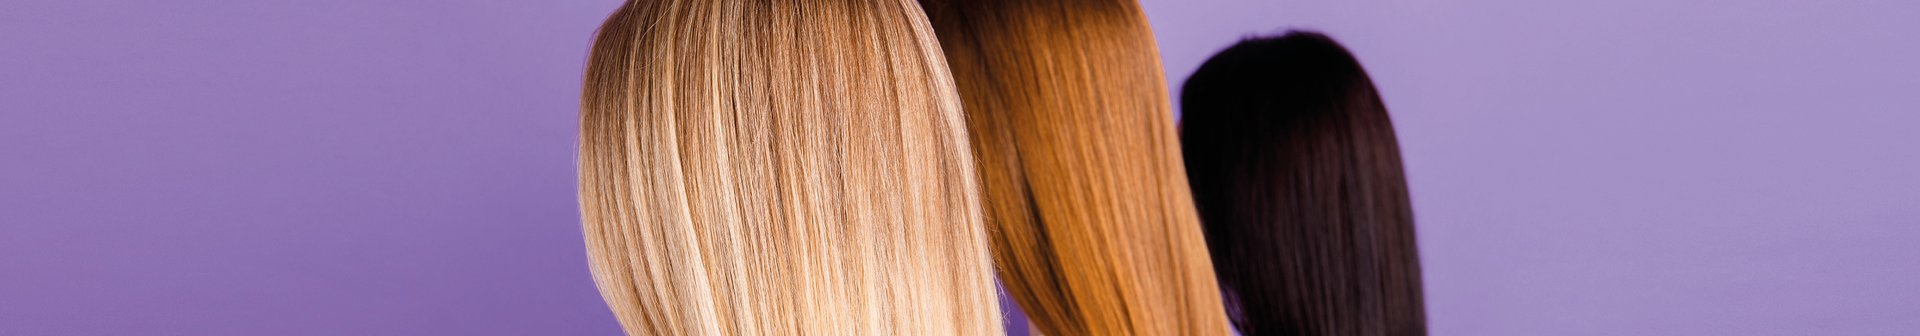 Ragazze di schiena con capelli di diversi colori